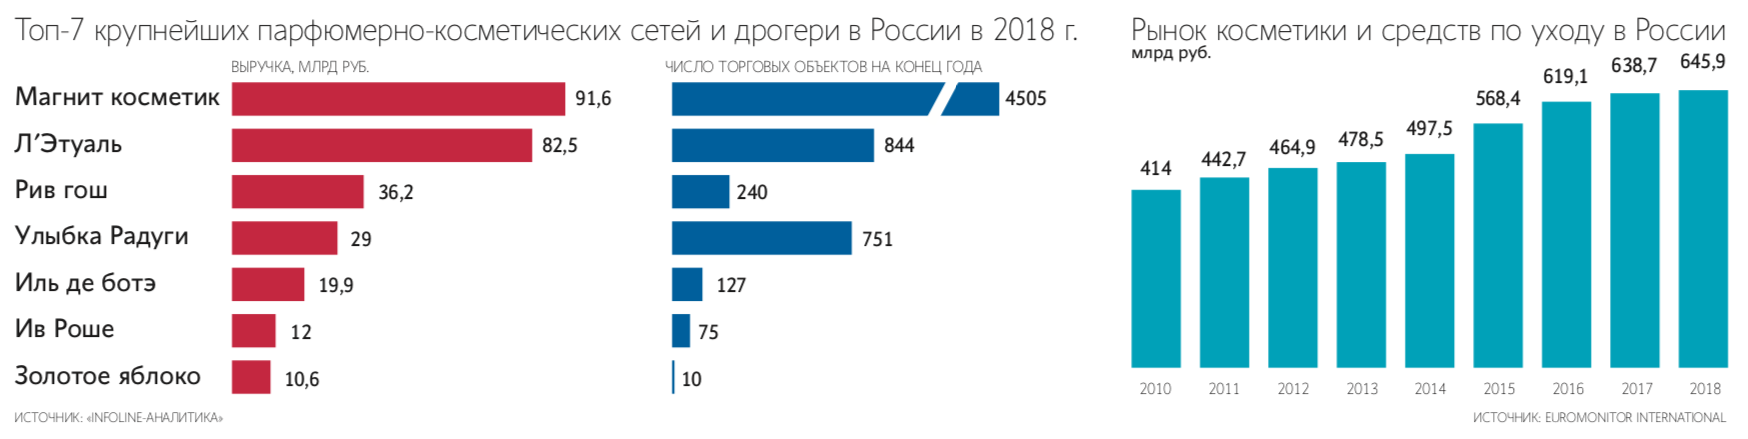 Топ-7 крупнейших парфюмерно-косметических сетей и дрогери России